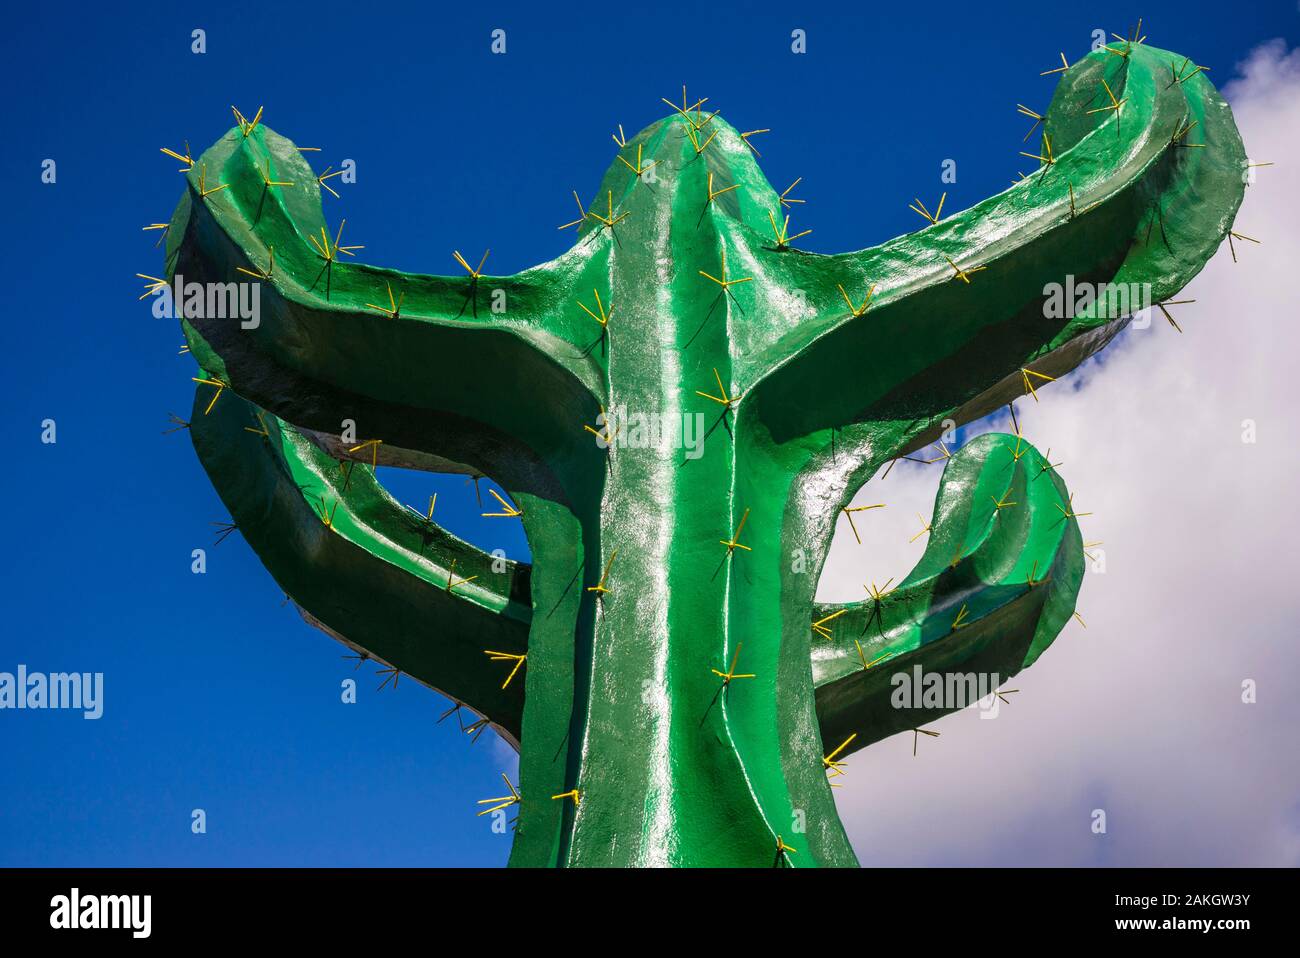 Spanien, Kanarische Inseln, Gran Canaria, Artejevez, Kaktus geformte Zeichen für Catualdea Cactus Park Stockfoto